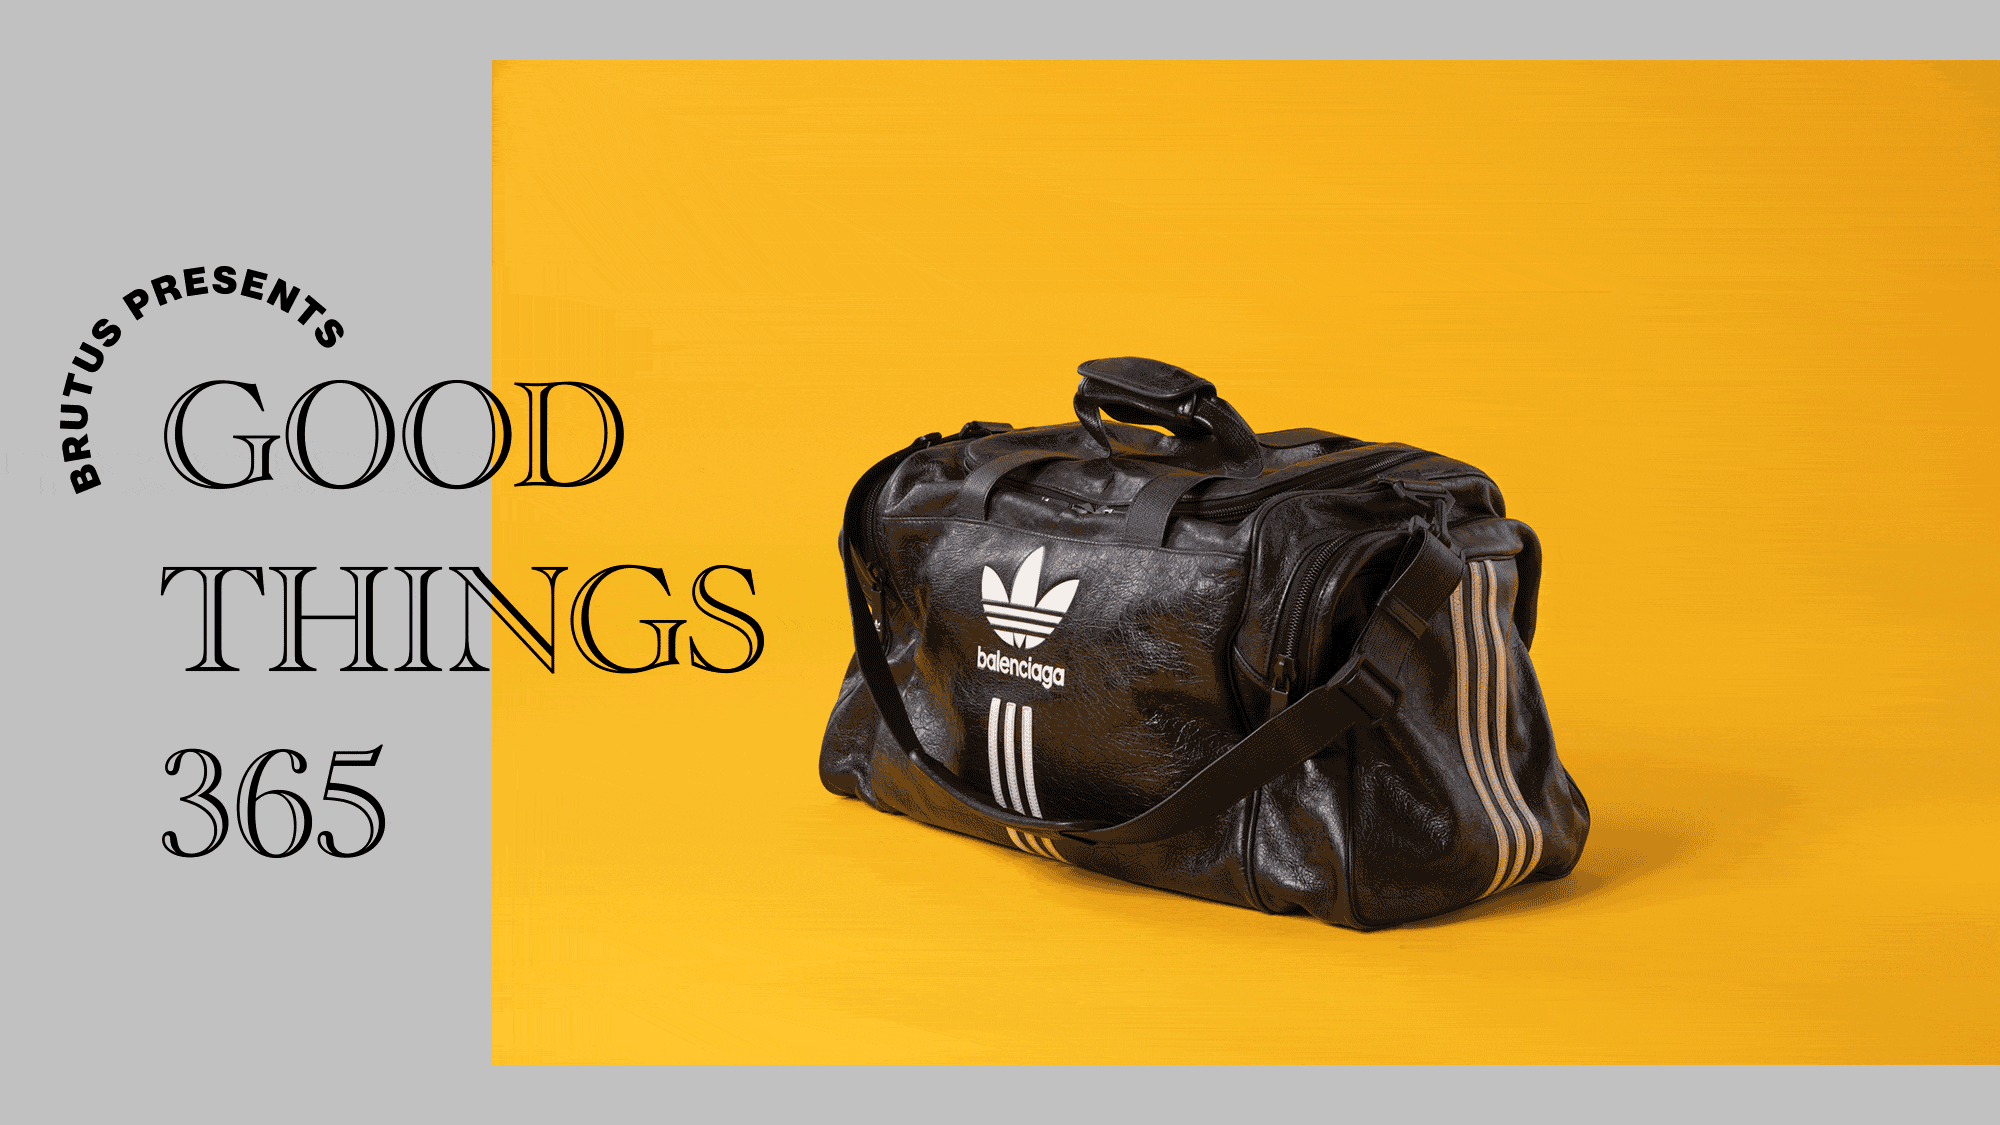 〈バレンシアガ×アディダス〉のバッグ：GOOD THINGS 365